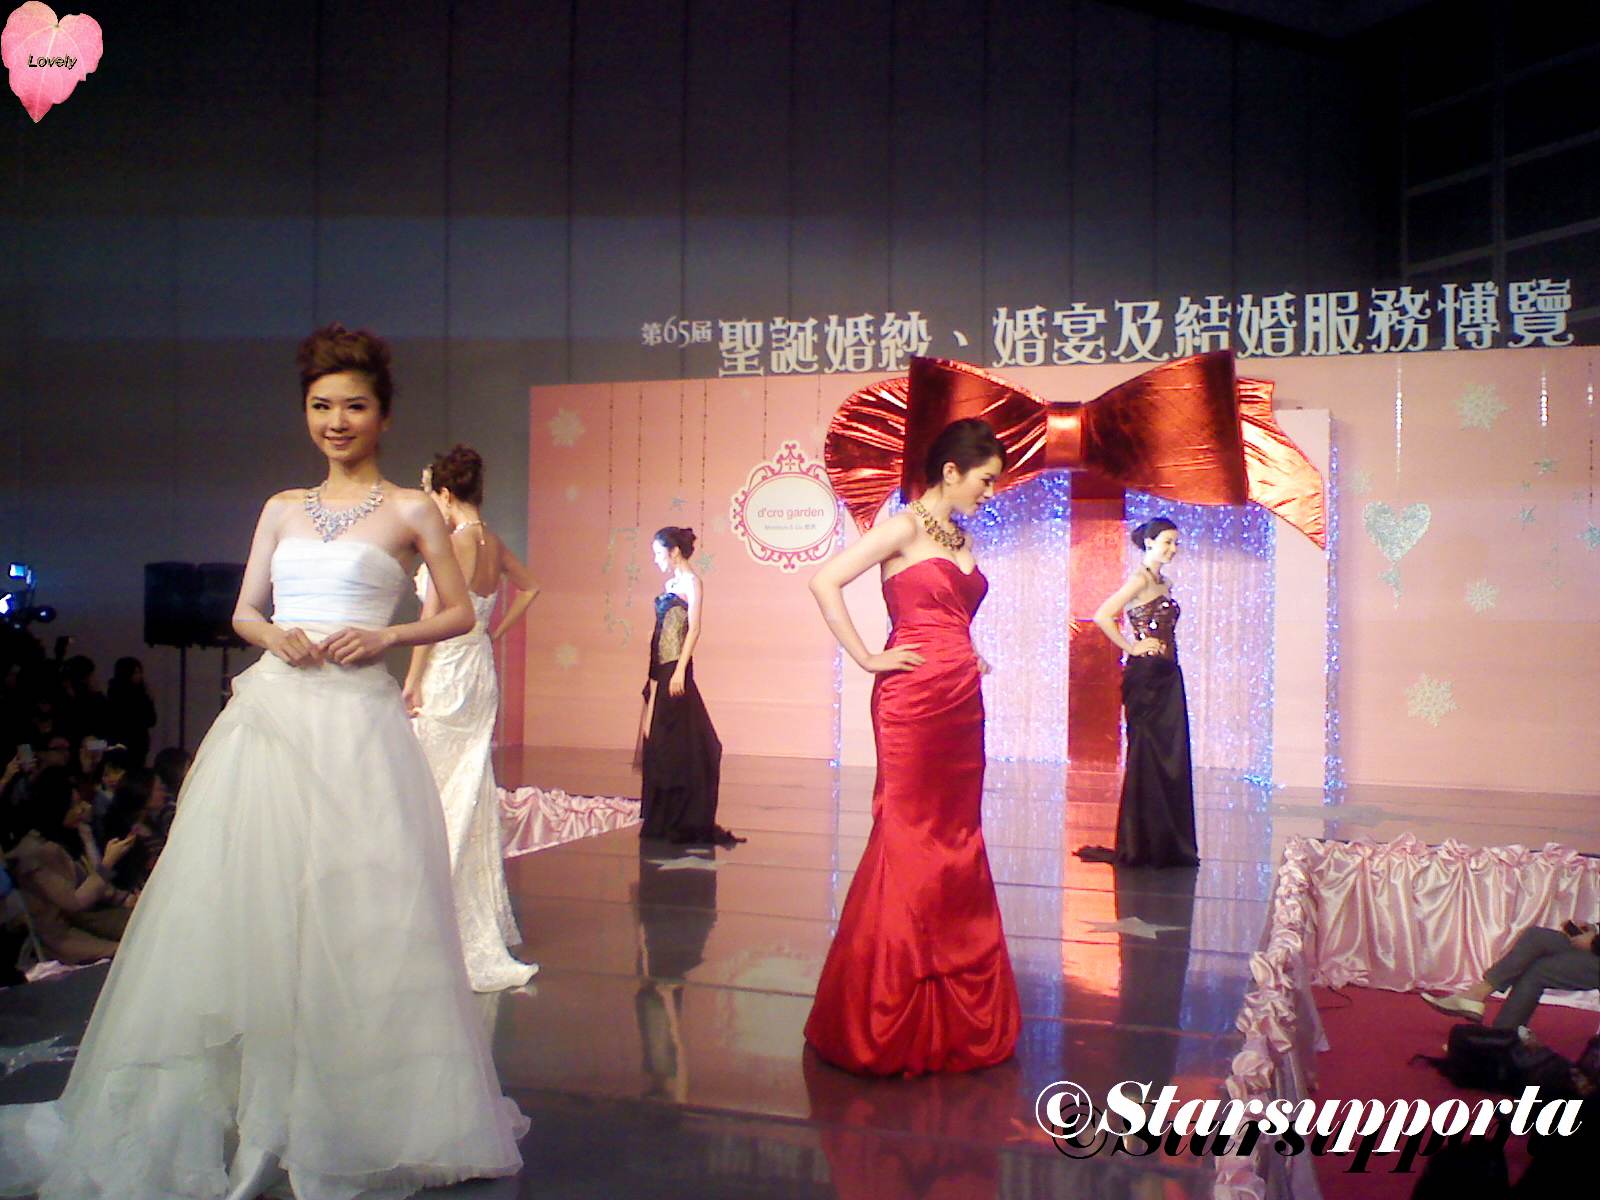 20111217 聖誔婚紗、婚宴及結婚服務博覽 - Monique & Co: d cro garden @ 香港會議展覽中心 HKCEC (video)